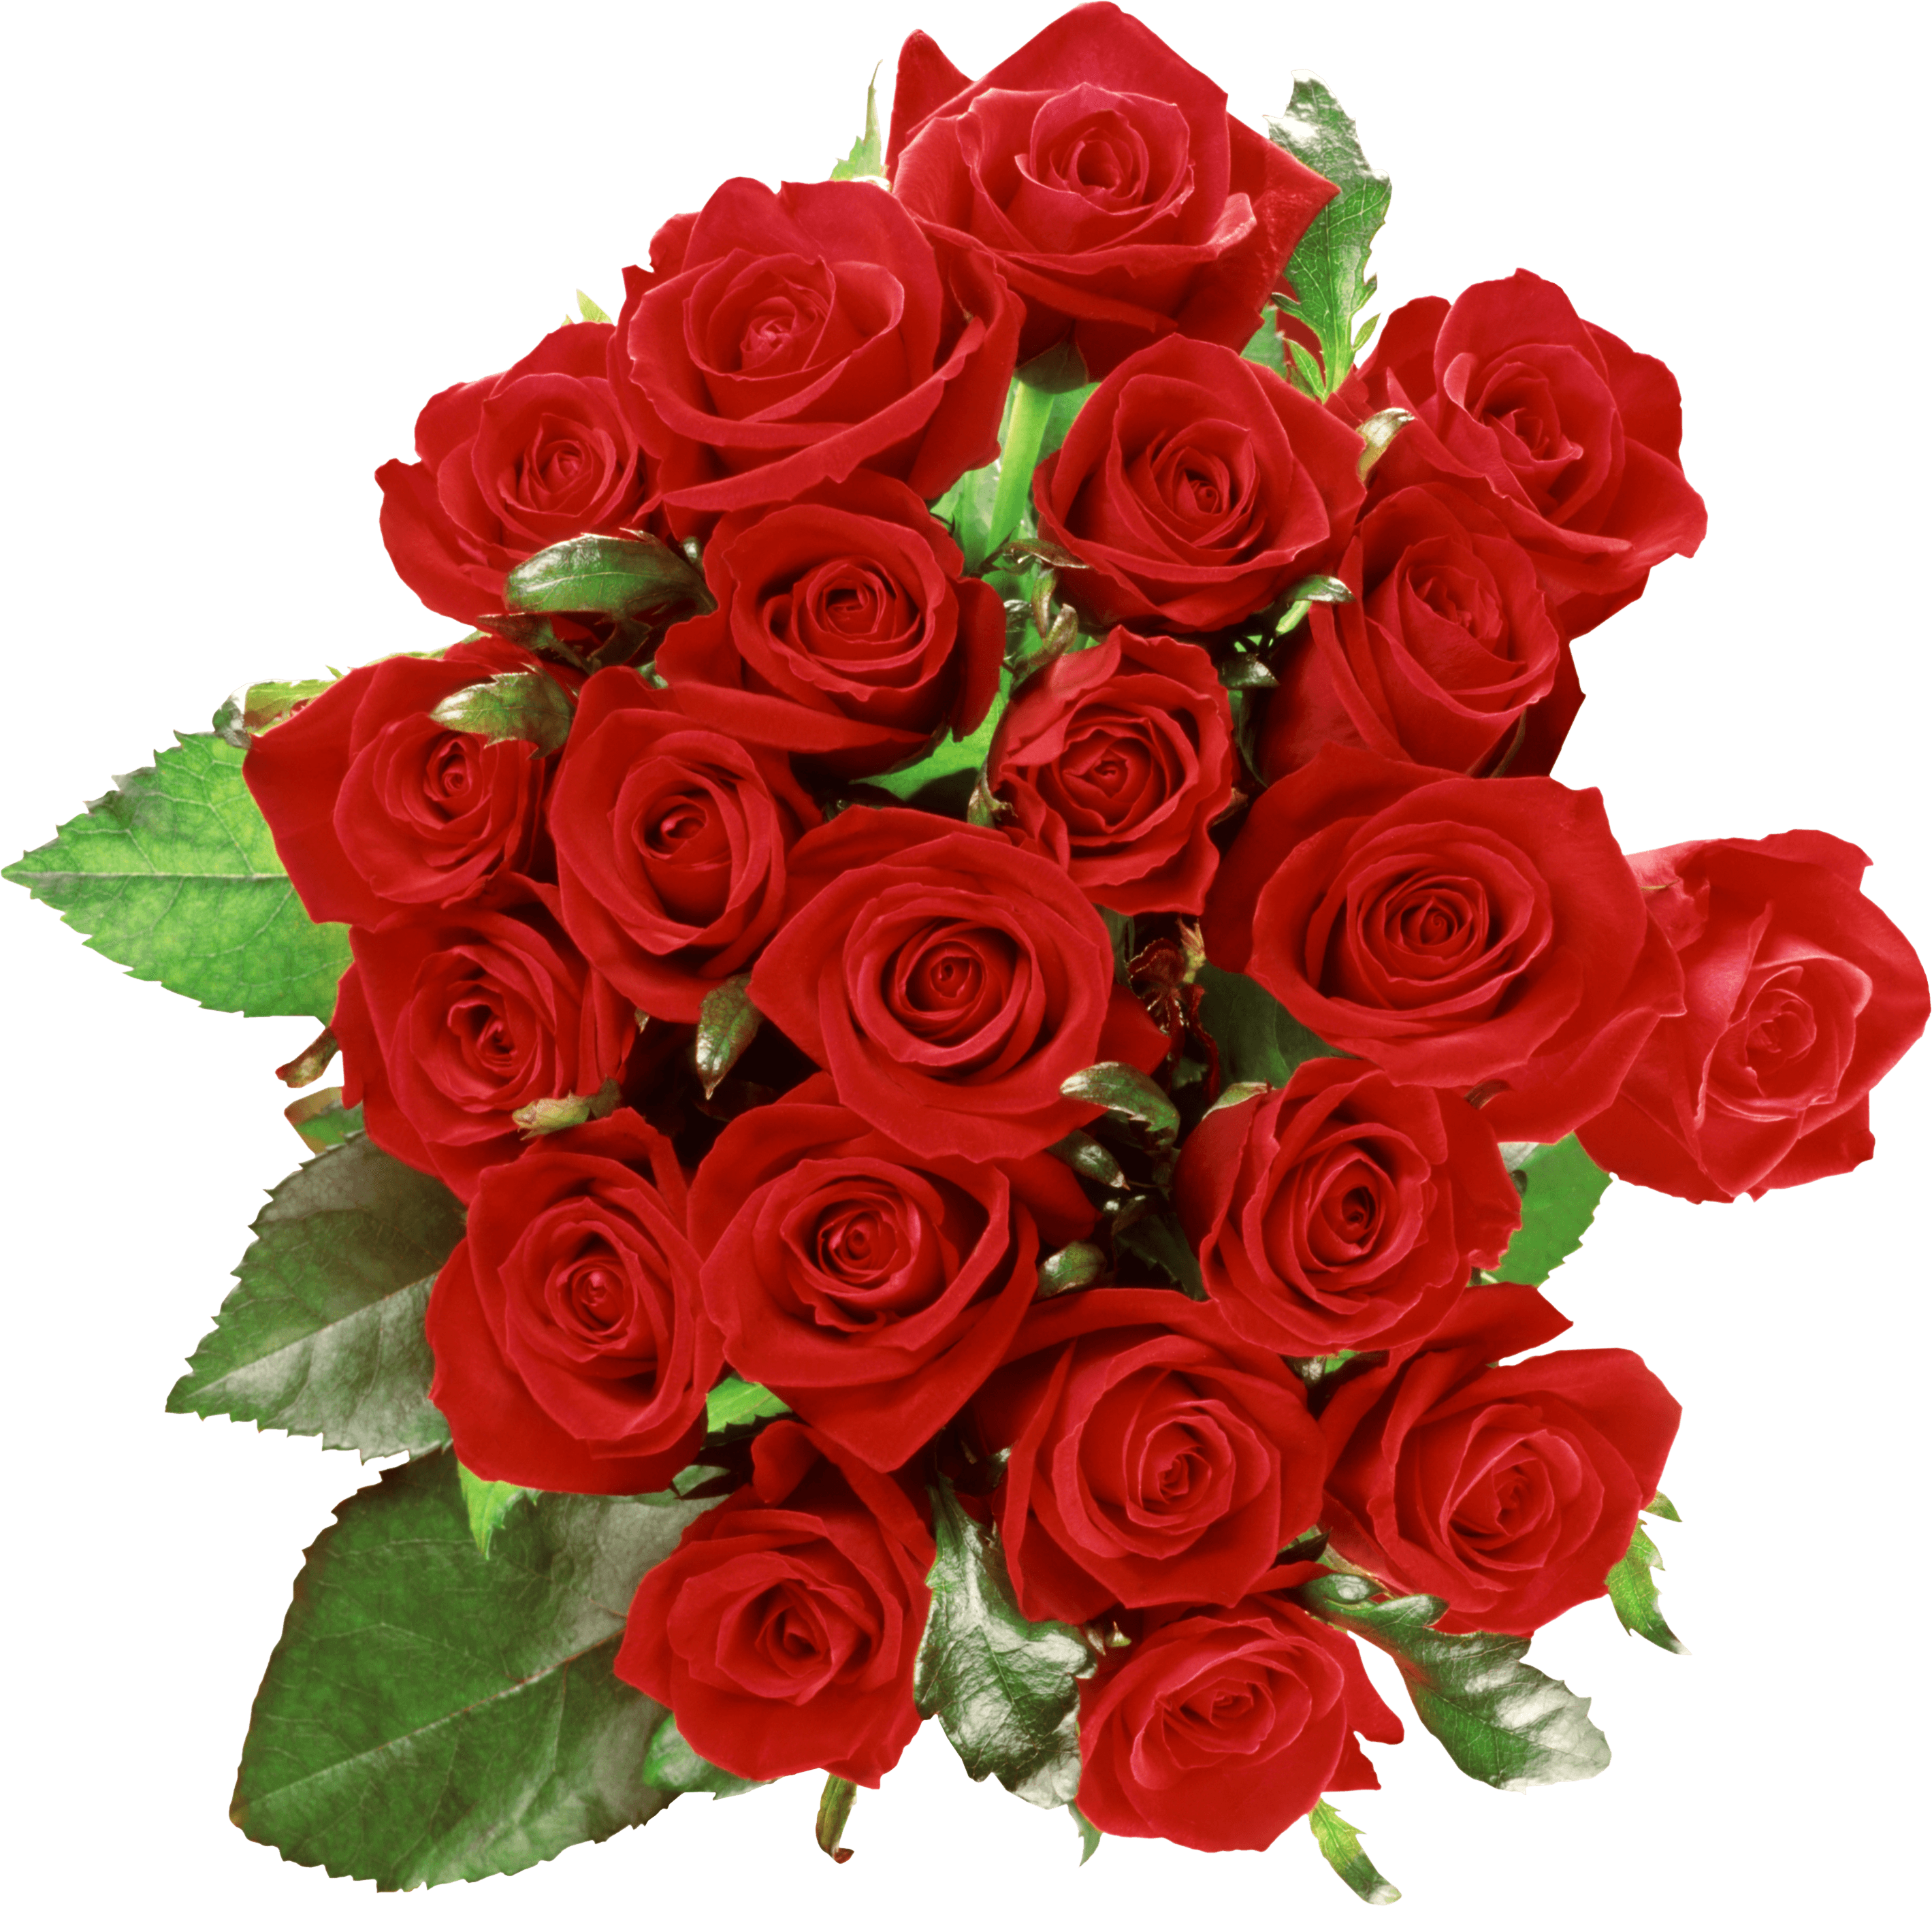 Красивые красные розы на прозрачном фоне фото